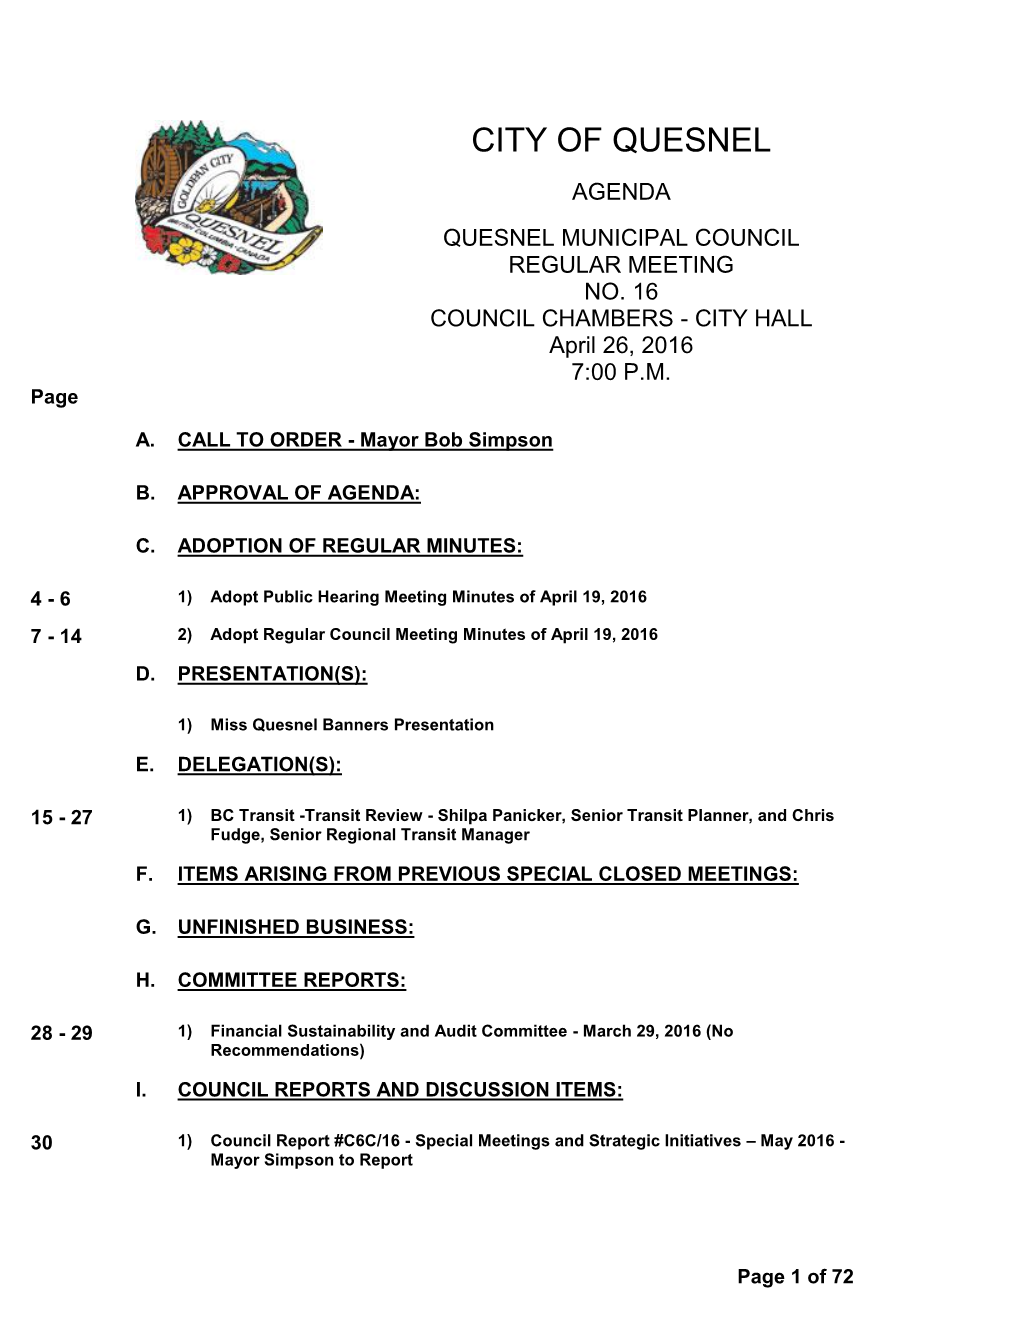 Regular Council Meeting Minutes of April 19, 2016